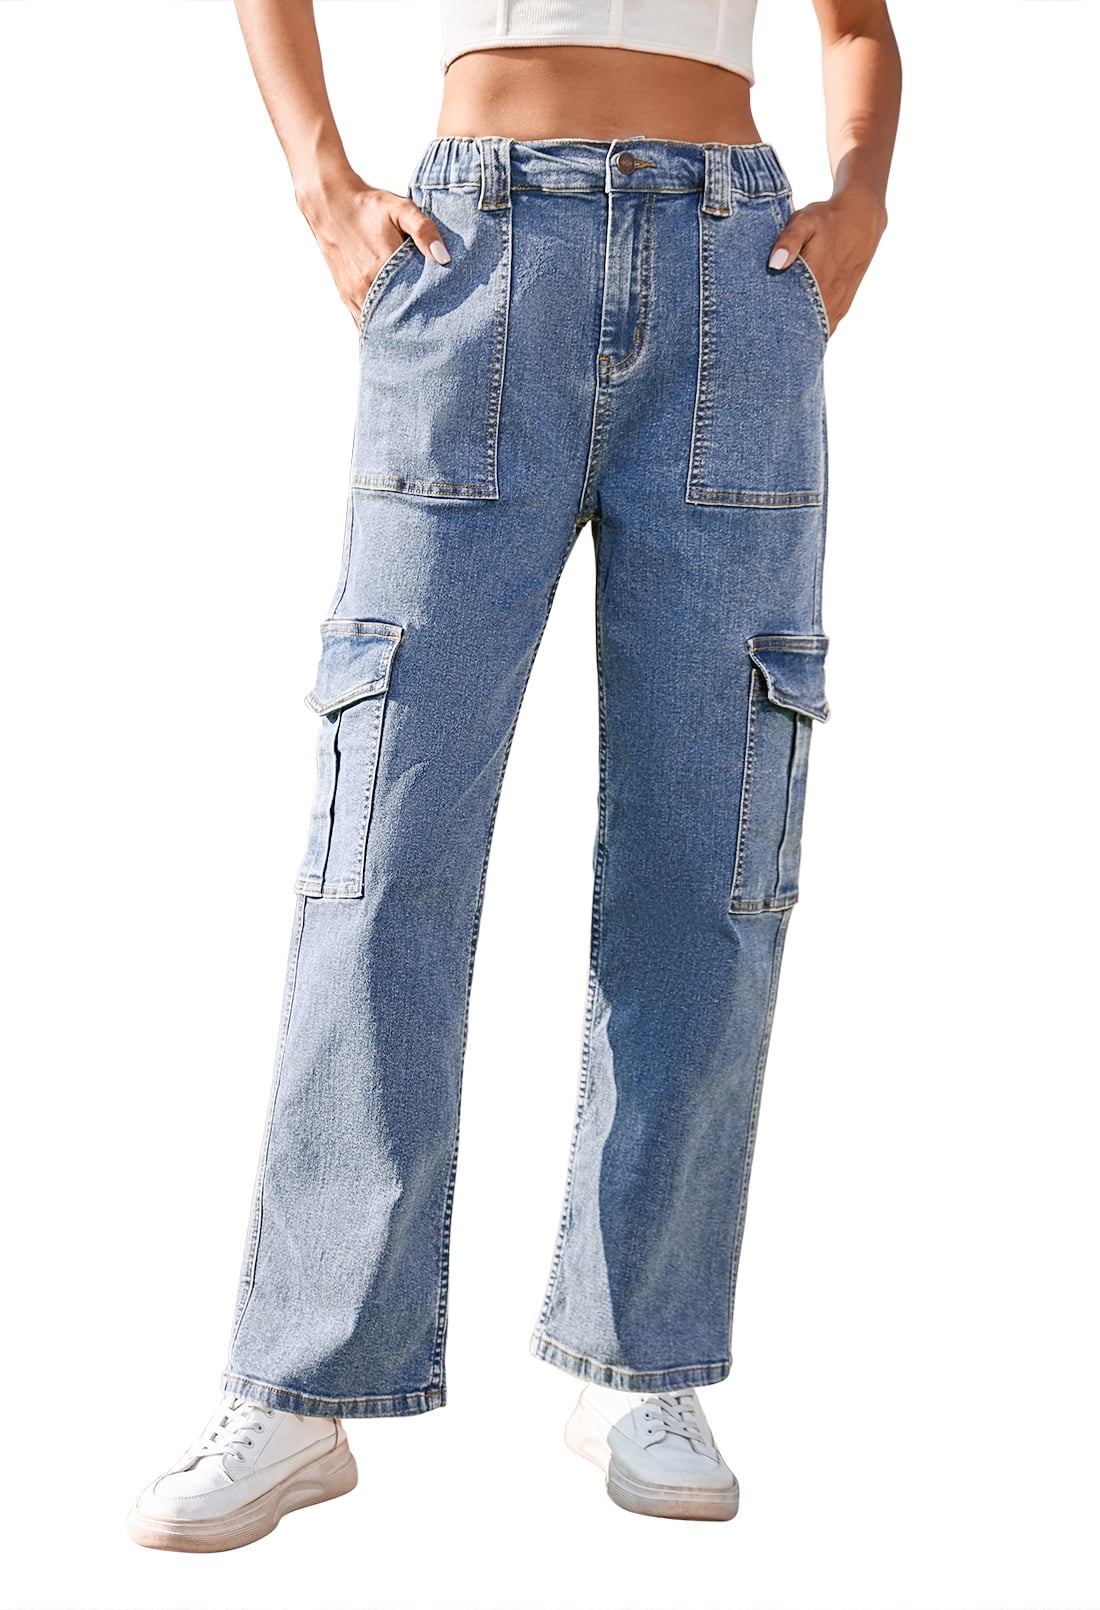 Dyfzdhu Jeans For Women Cargo Pants Loose Low Waist Trousers Wide Leg Baggy  Jeans With Pockets Streetwear Punk Khaki L 